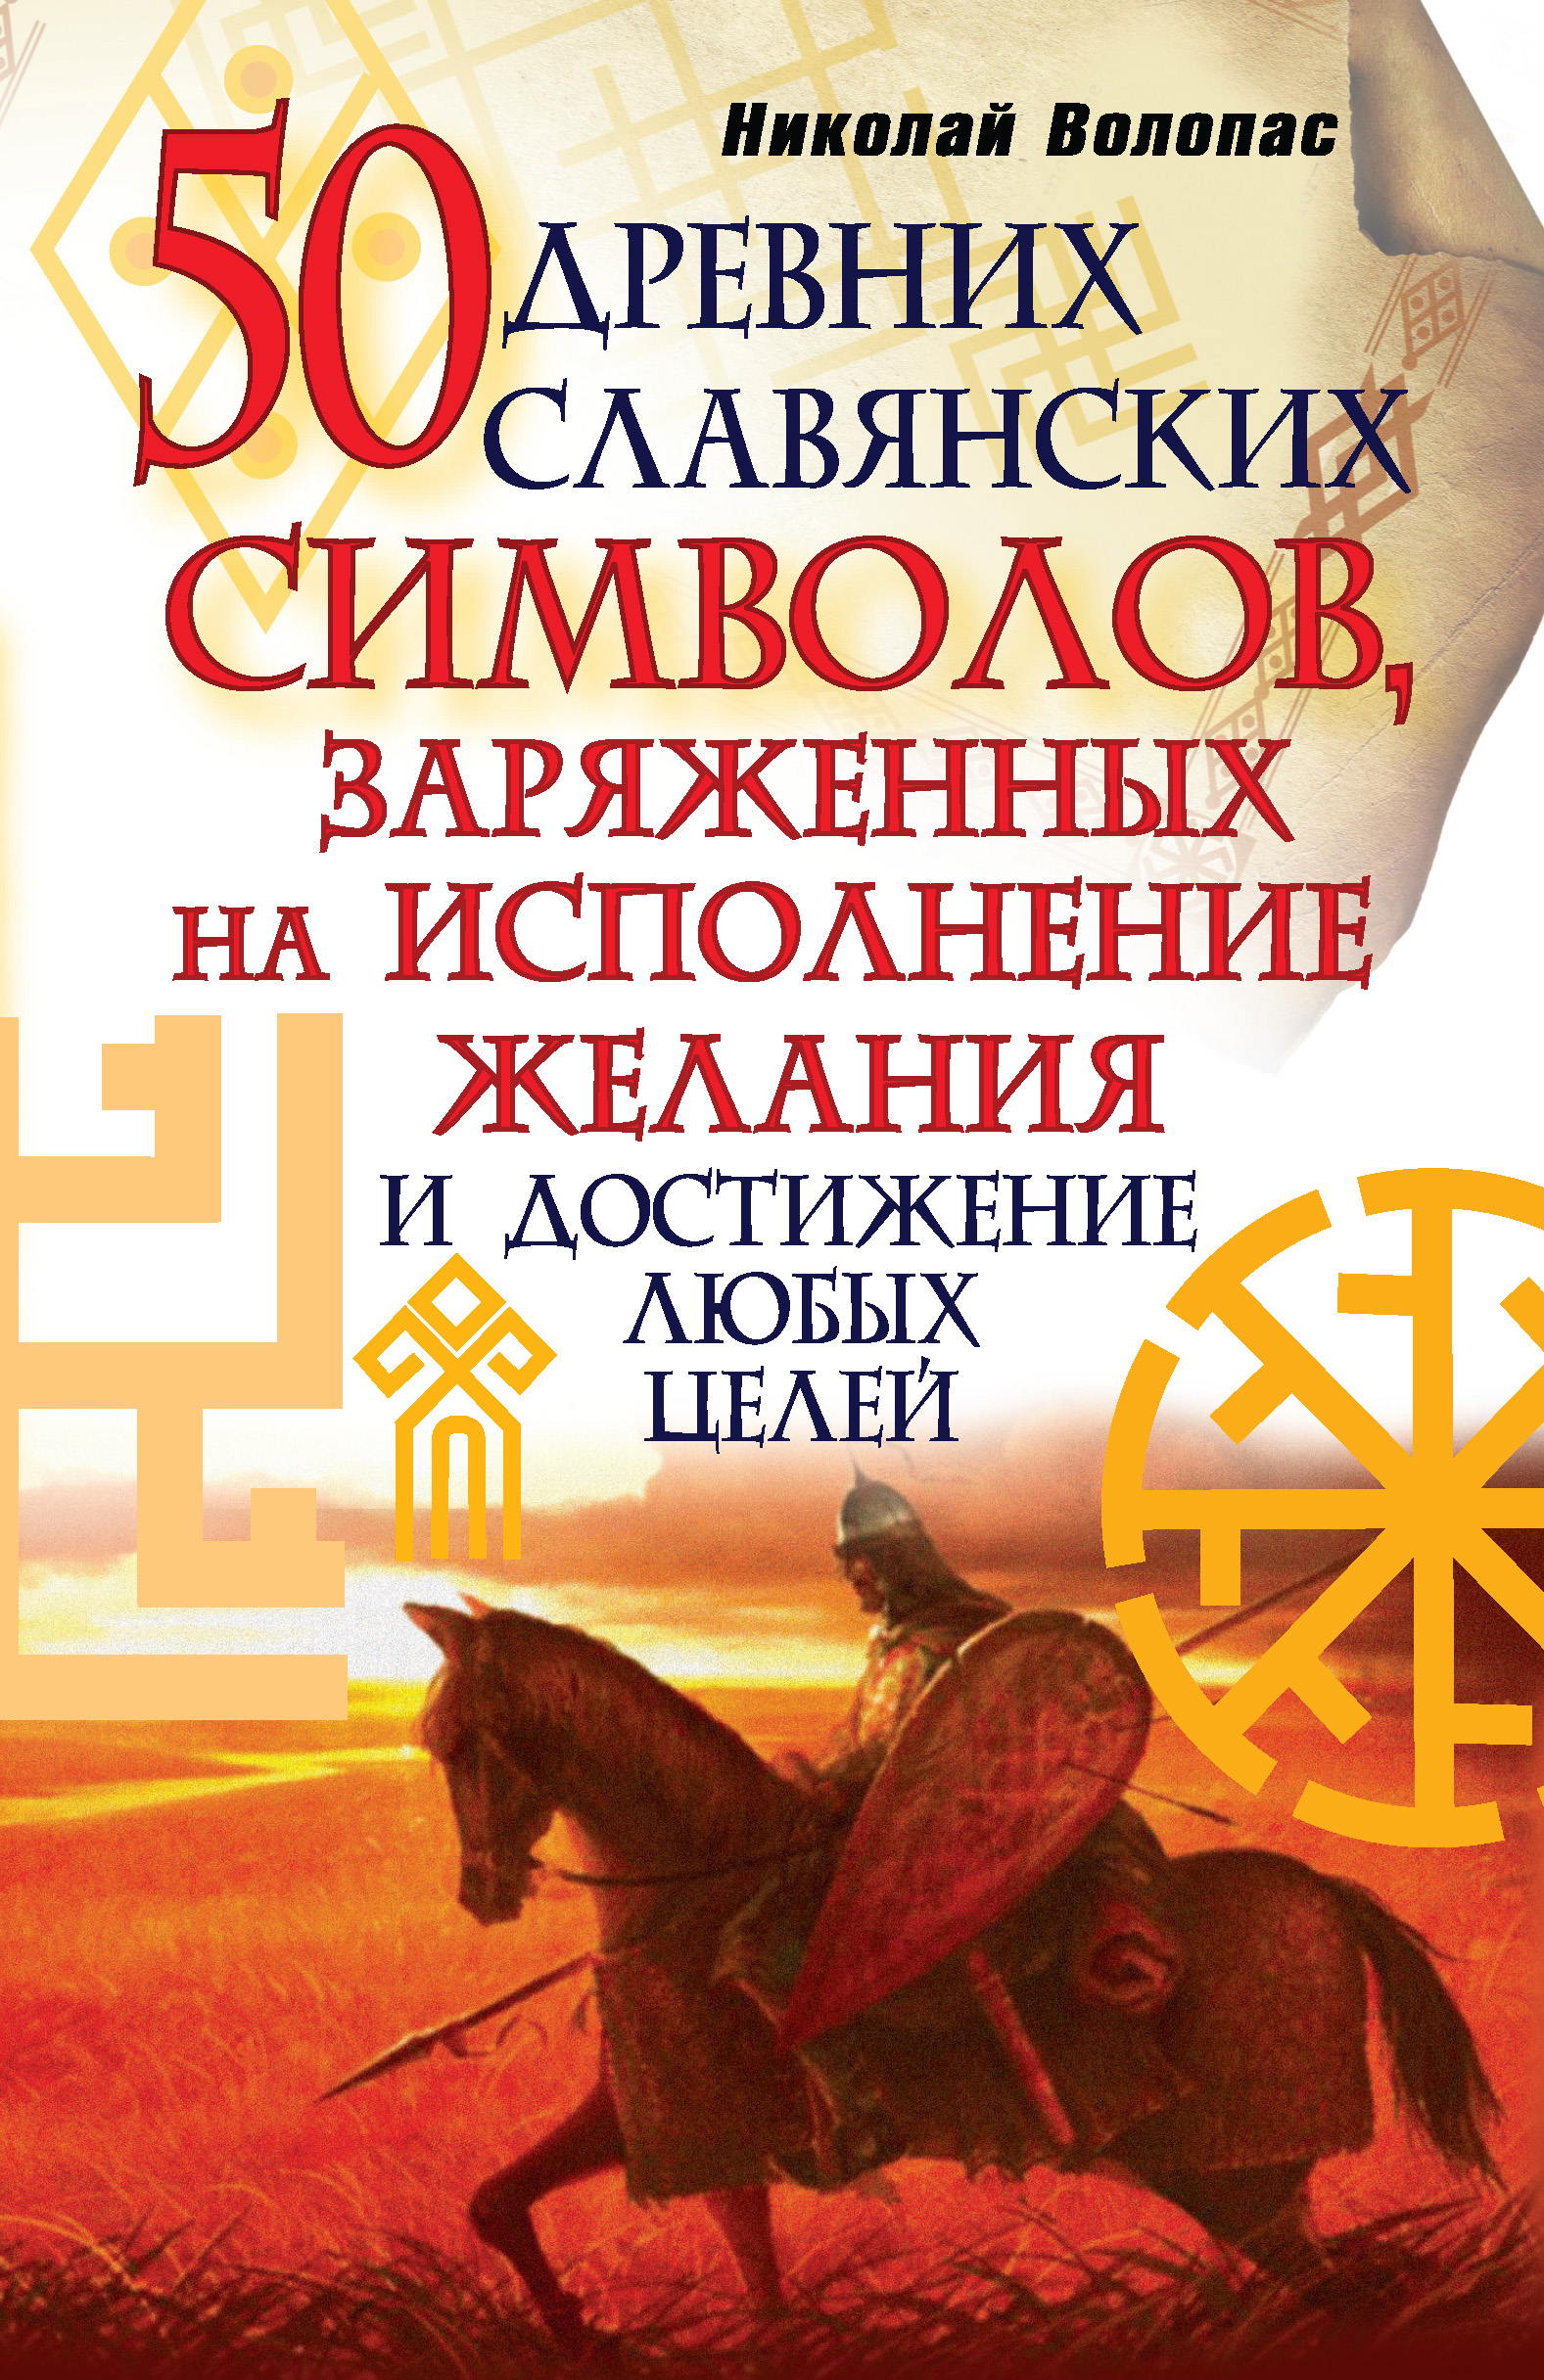 50древних славянских символов, заряженных на исполнение желания и достижение любых целей